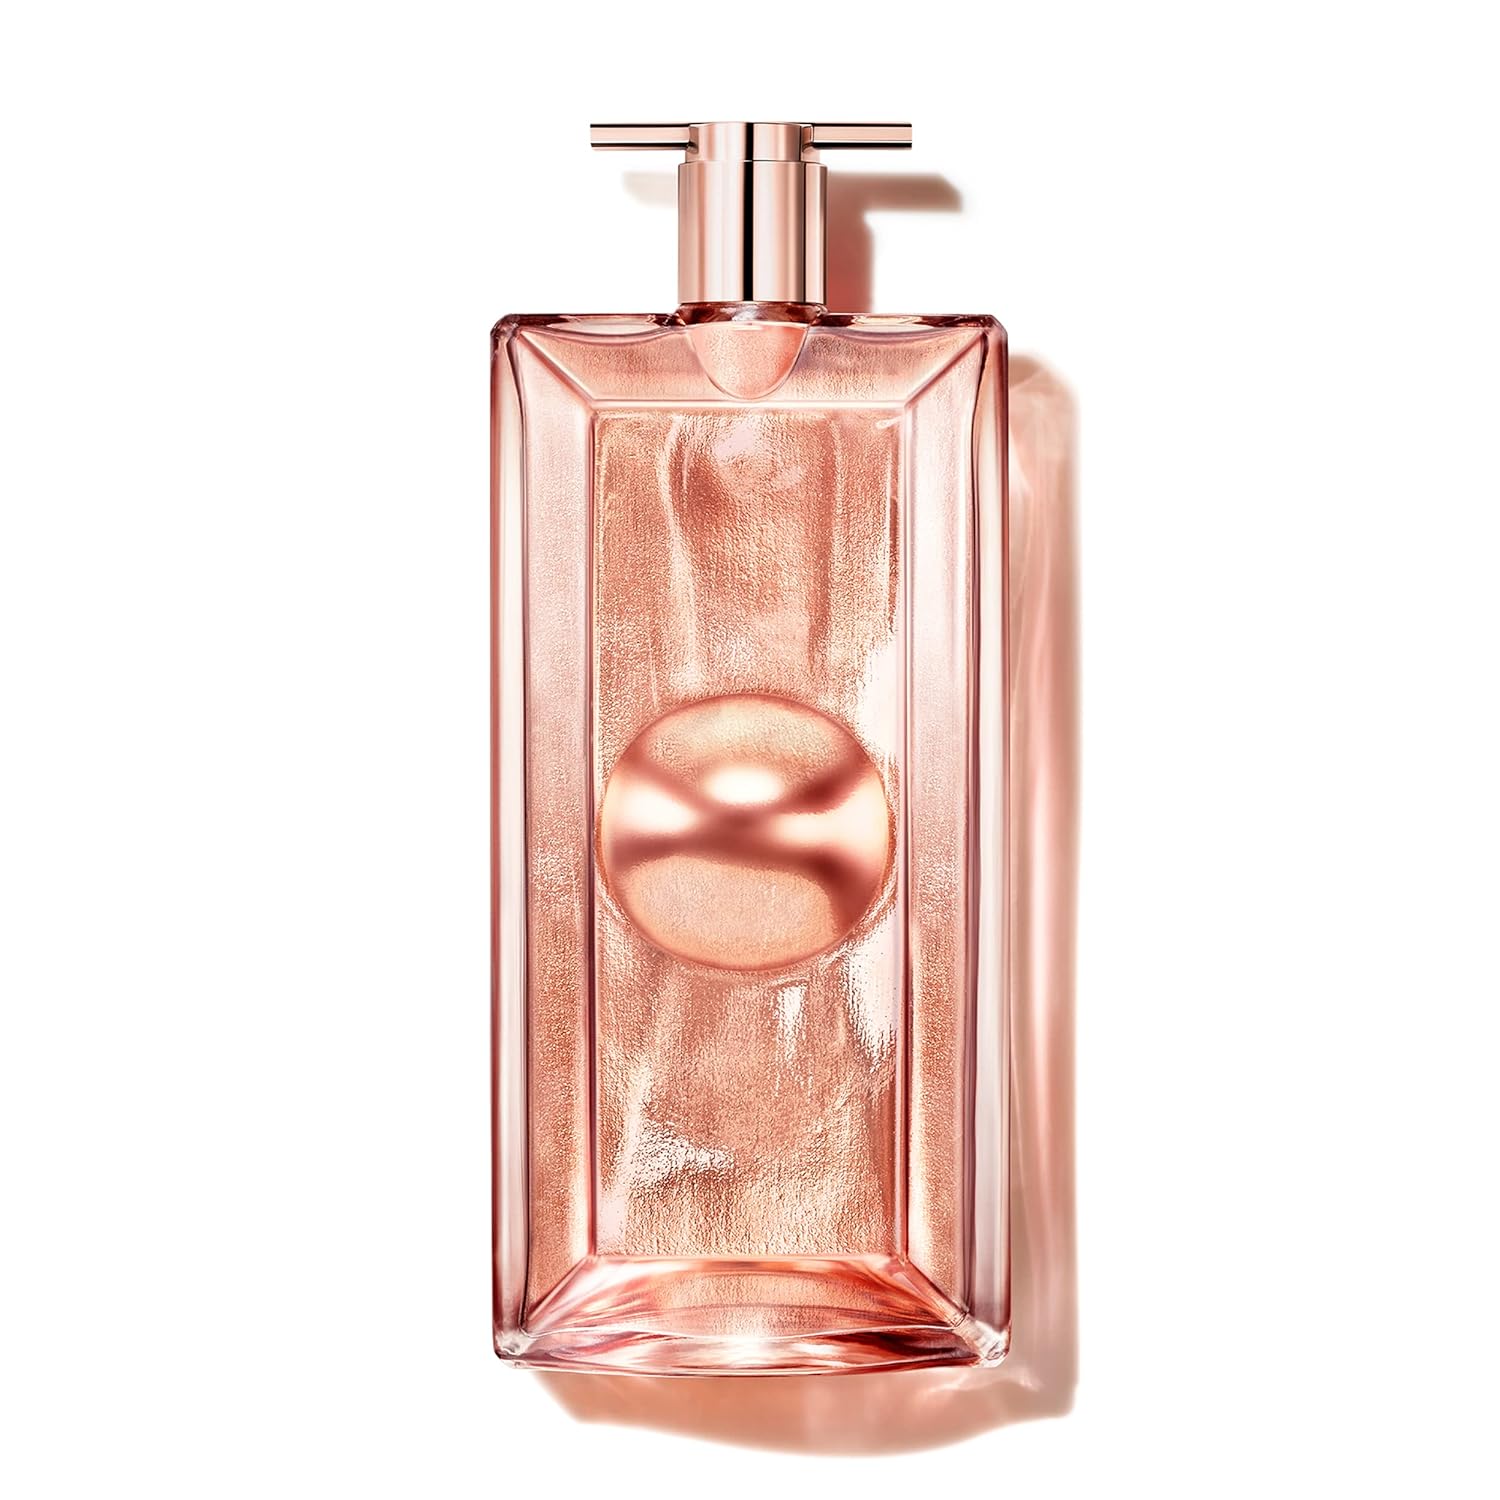 Lancôme Idôle L’Intense Eau de Parfum - Long Lasting Fragrance with Notes of Musky Florals & Vanilla - Warm & Floral Women's Perfume - 1.7 Fl Oz